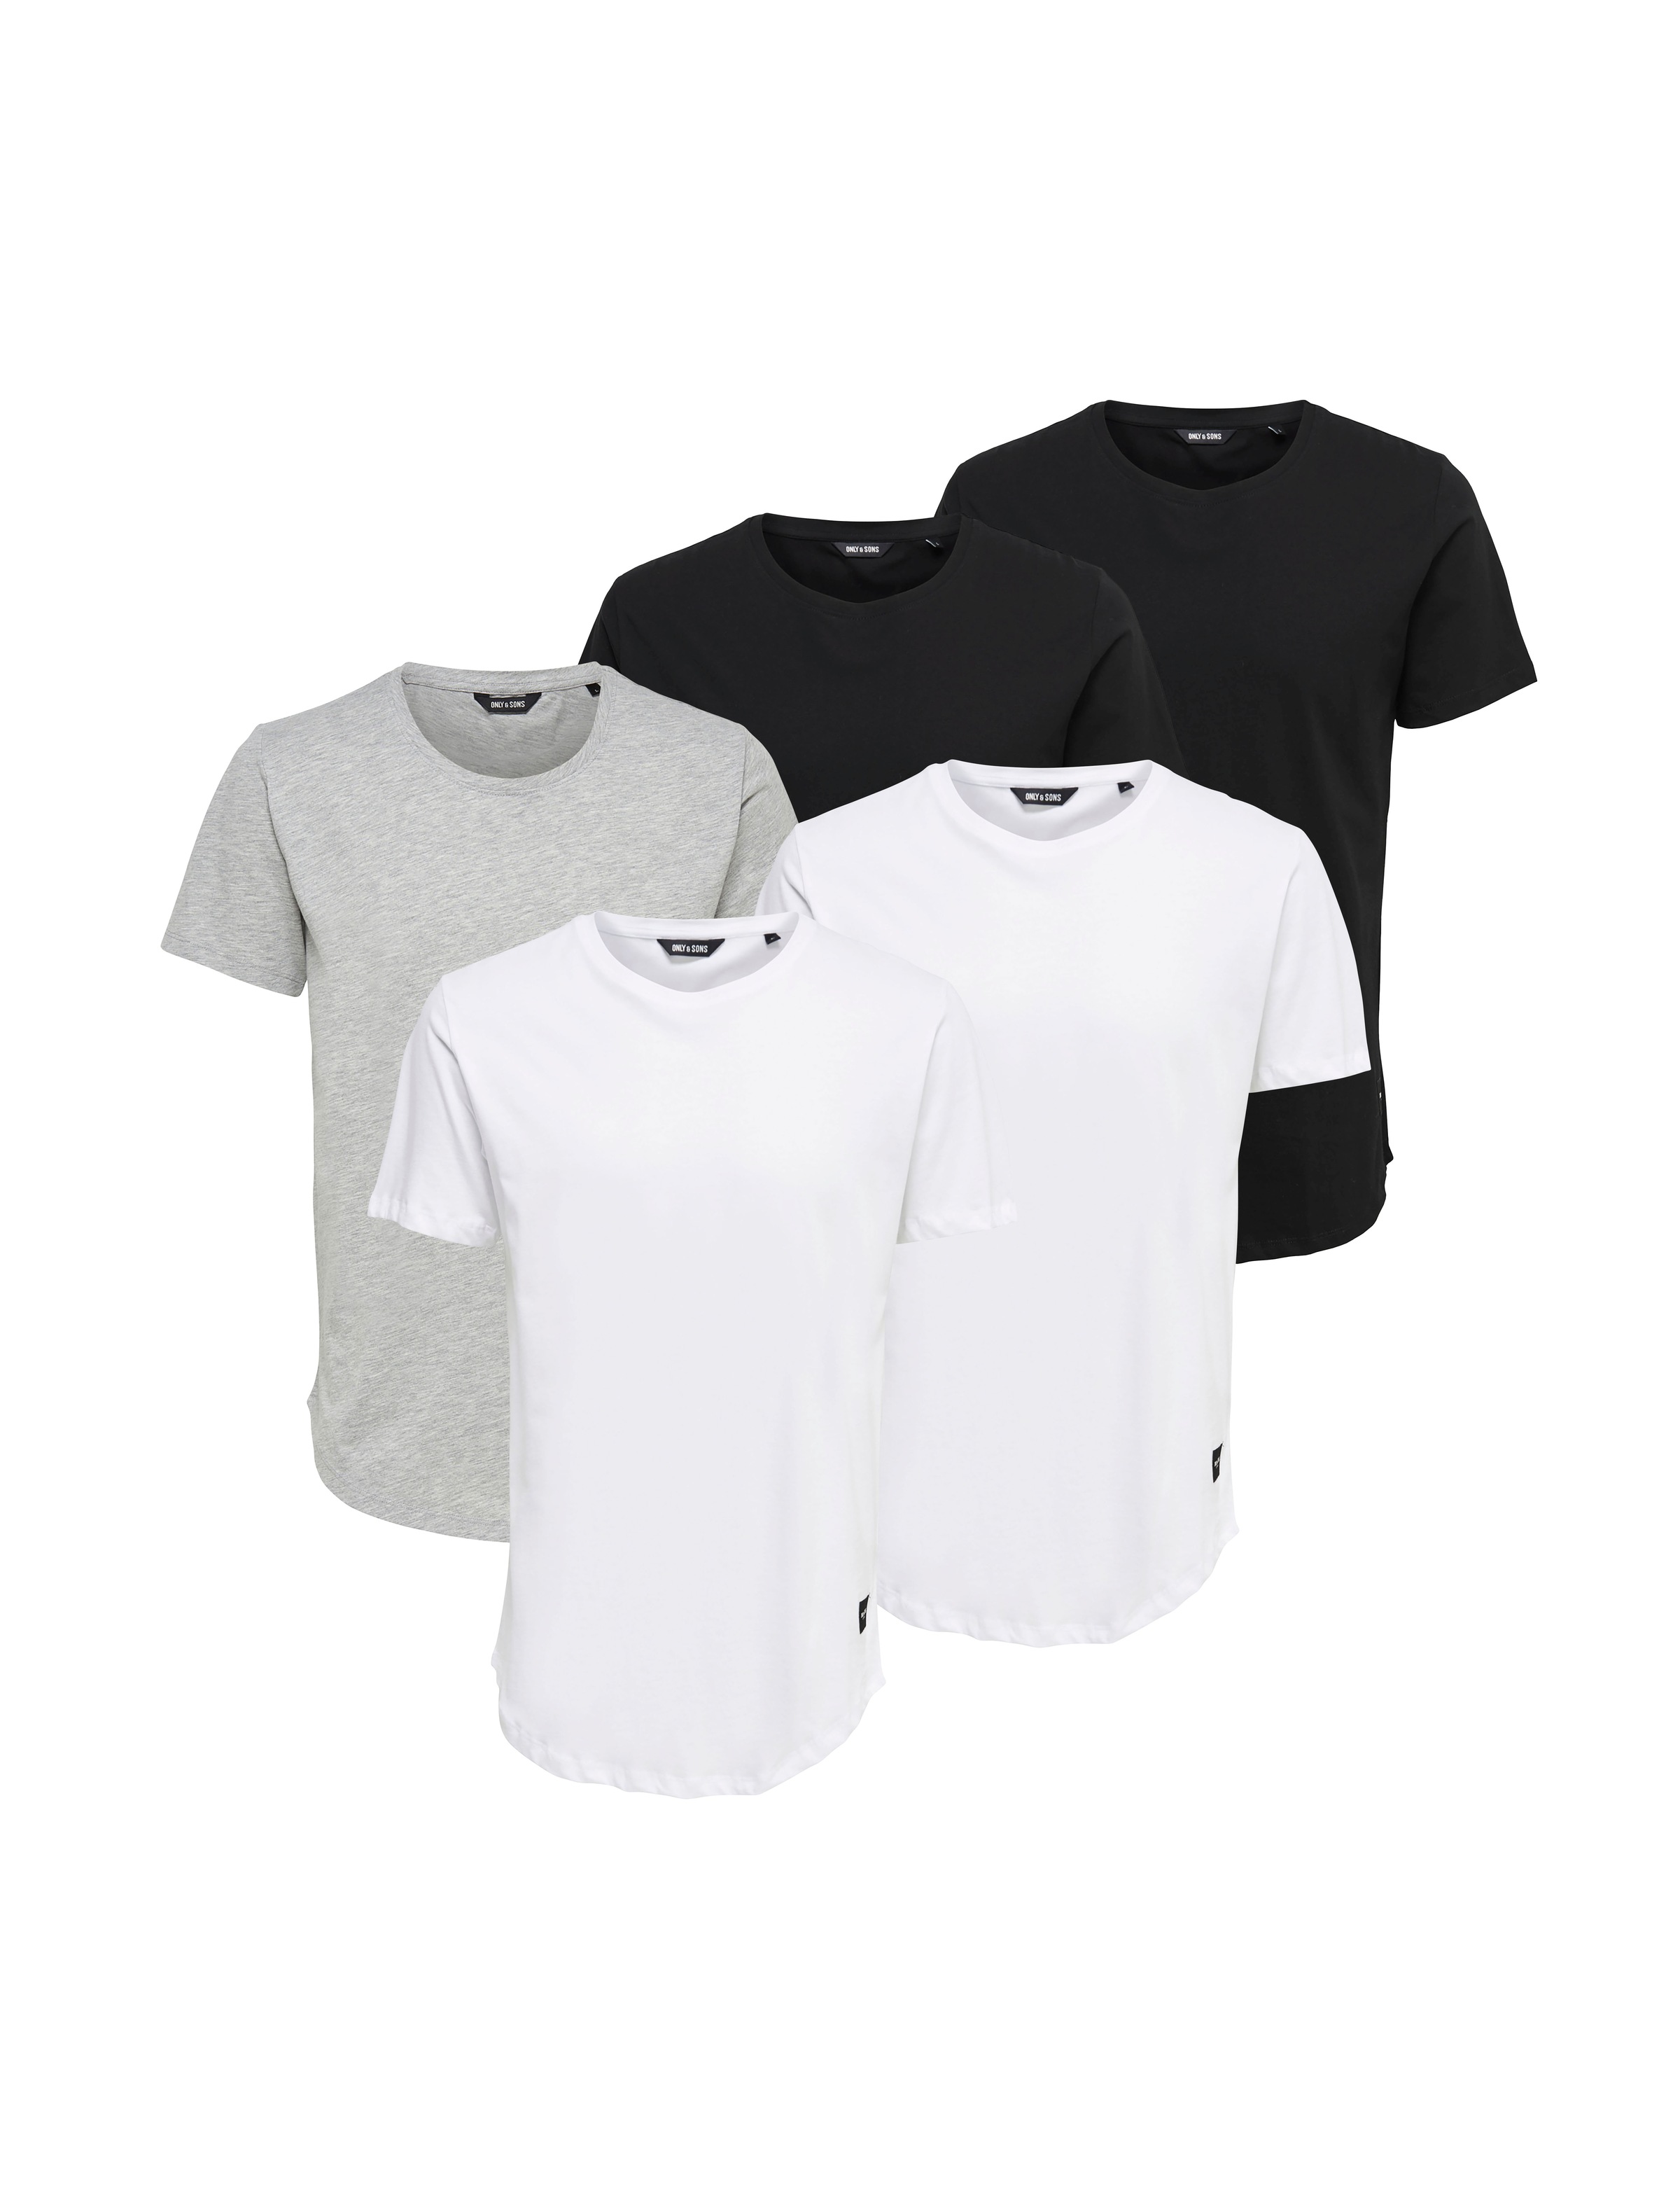 ONLY & SONS T-Shirt Grau M HERREN Hemden & T-Shirts Basisch Rabatt 54 % 